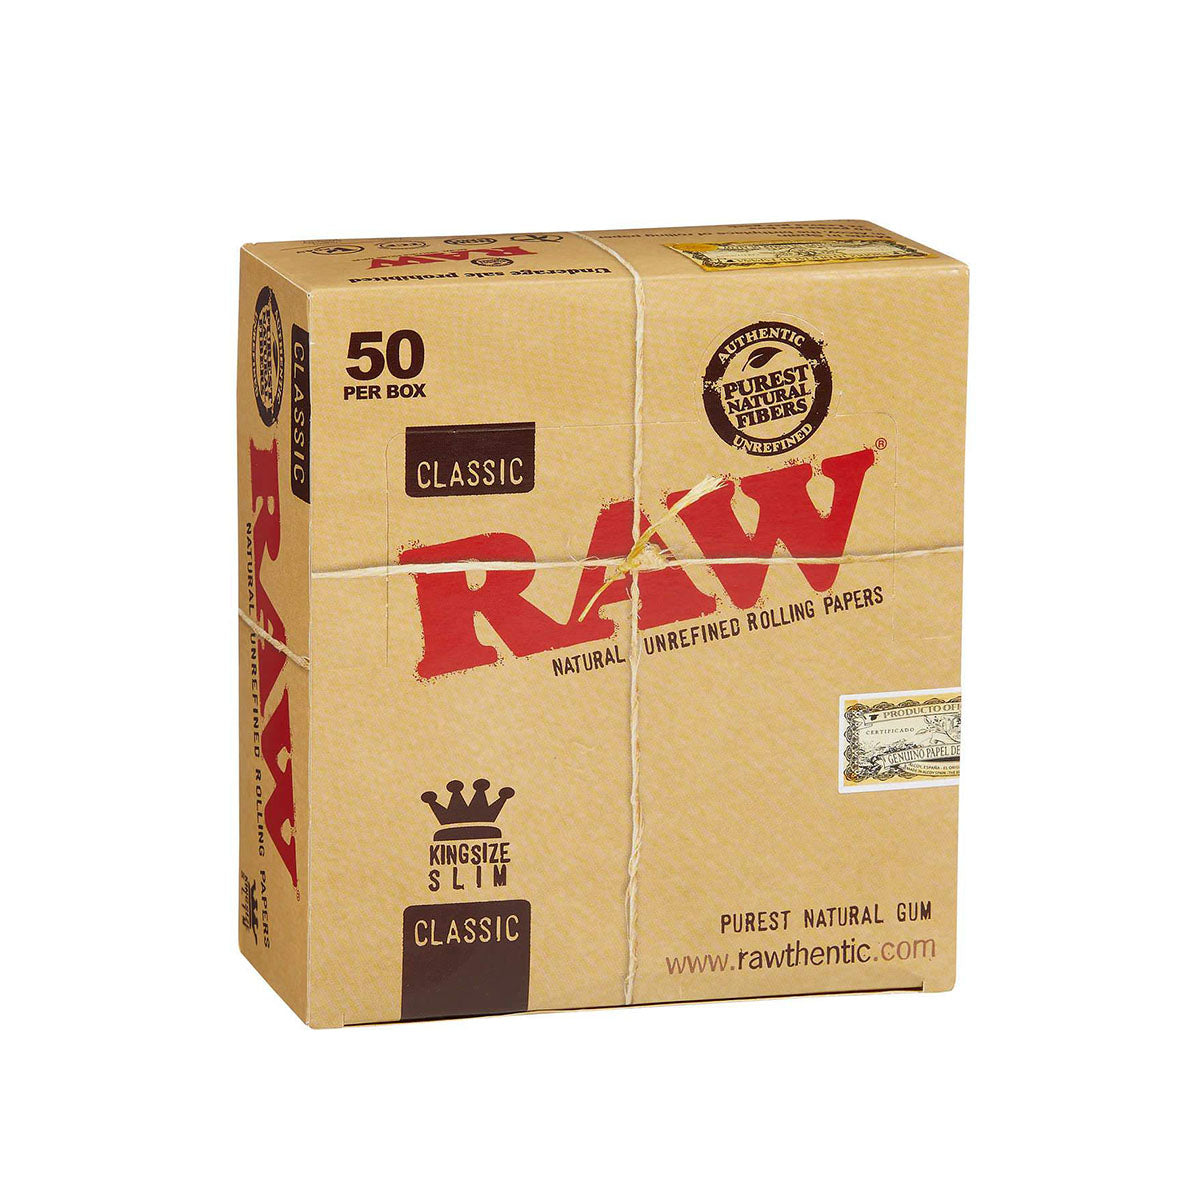 Raw Classic King Slim ROLLING PAPER 50 PER BOX